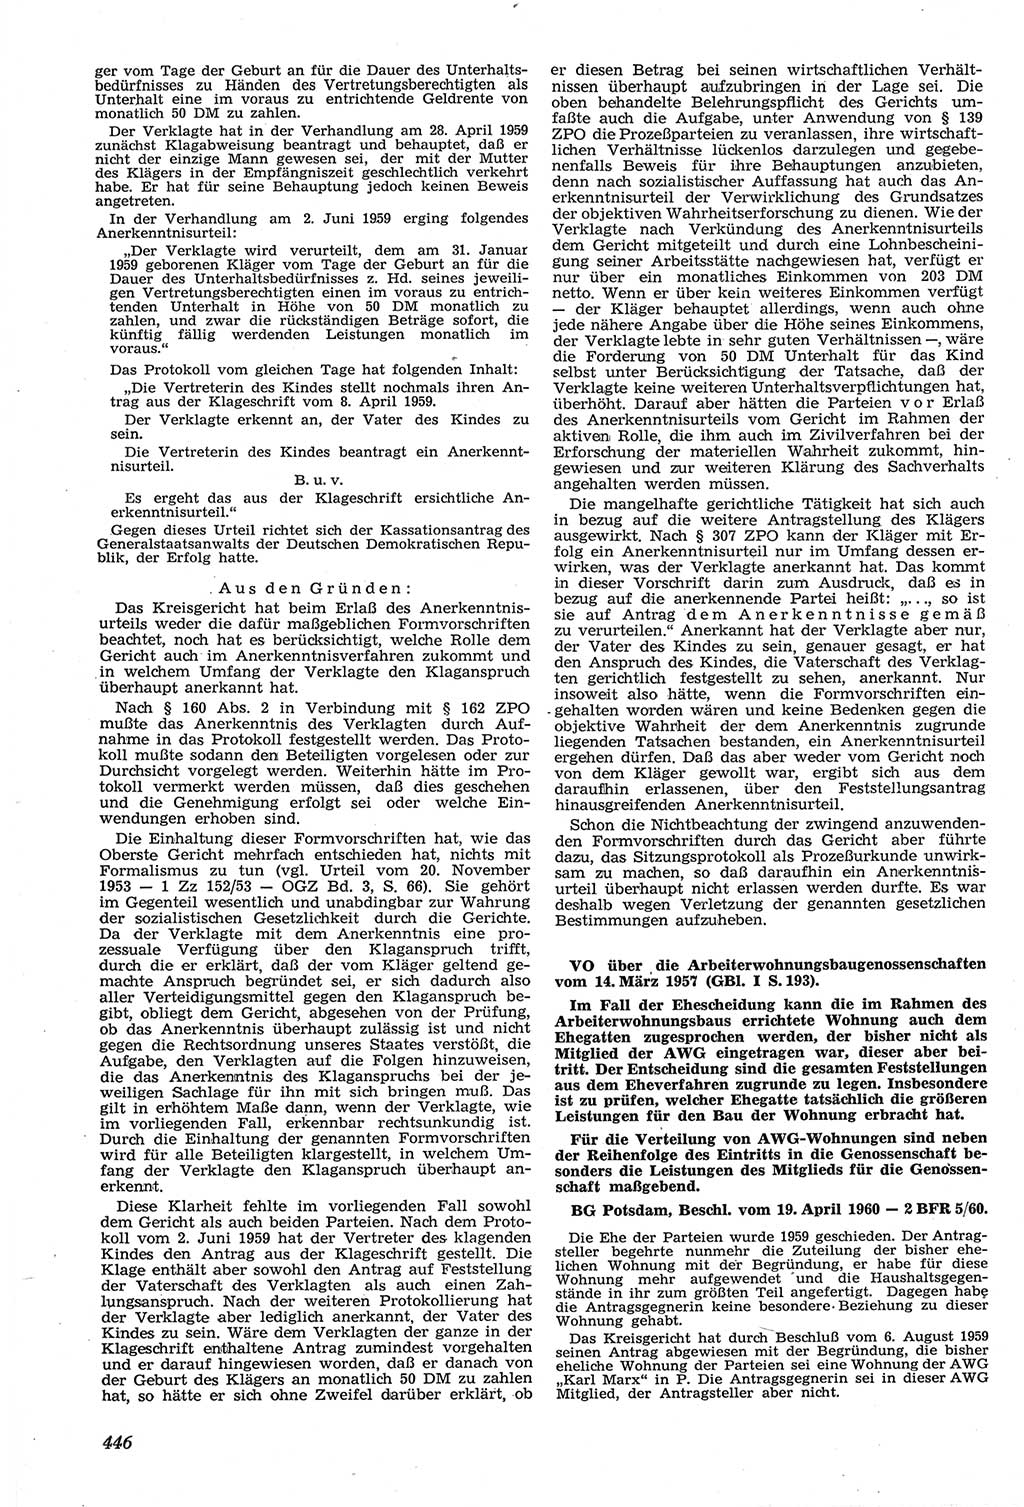 Neue Justiz (NJ), Zeitschrift für Recht und Rechtswissenschaft [Deutsche Demokratische Republik (DDR)], 14. Jahrgang 1960, Seite 446 (NJ DDR 1960, S. 446)